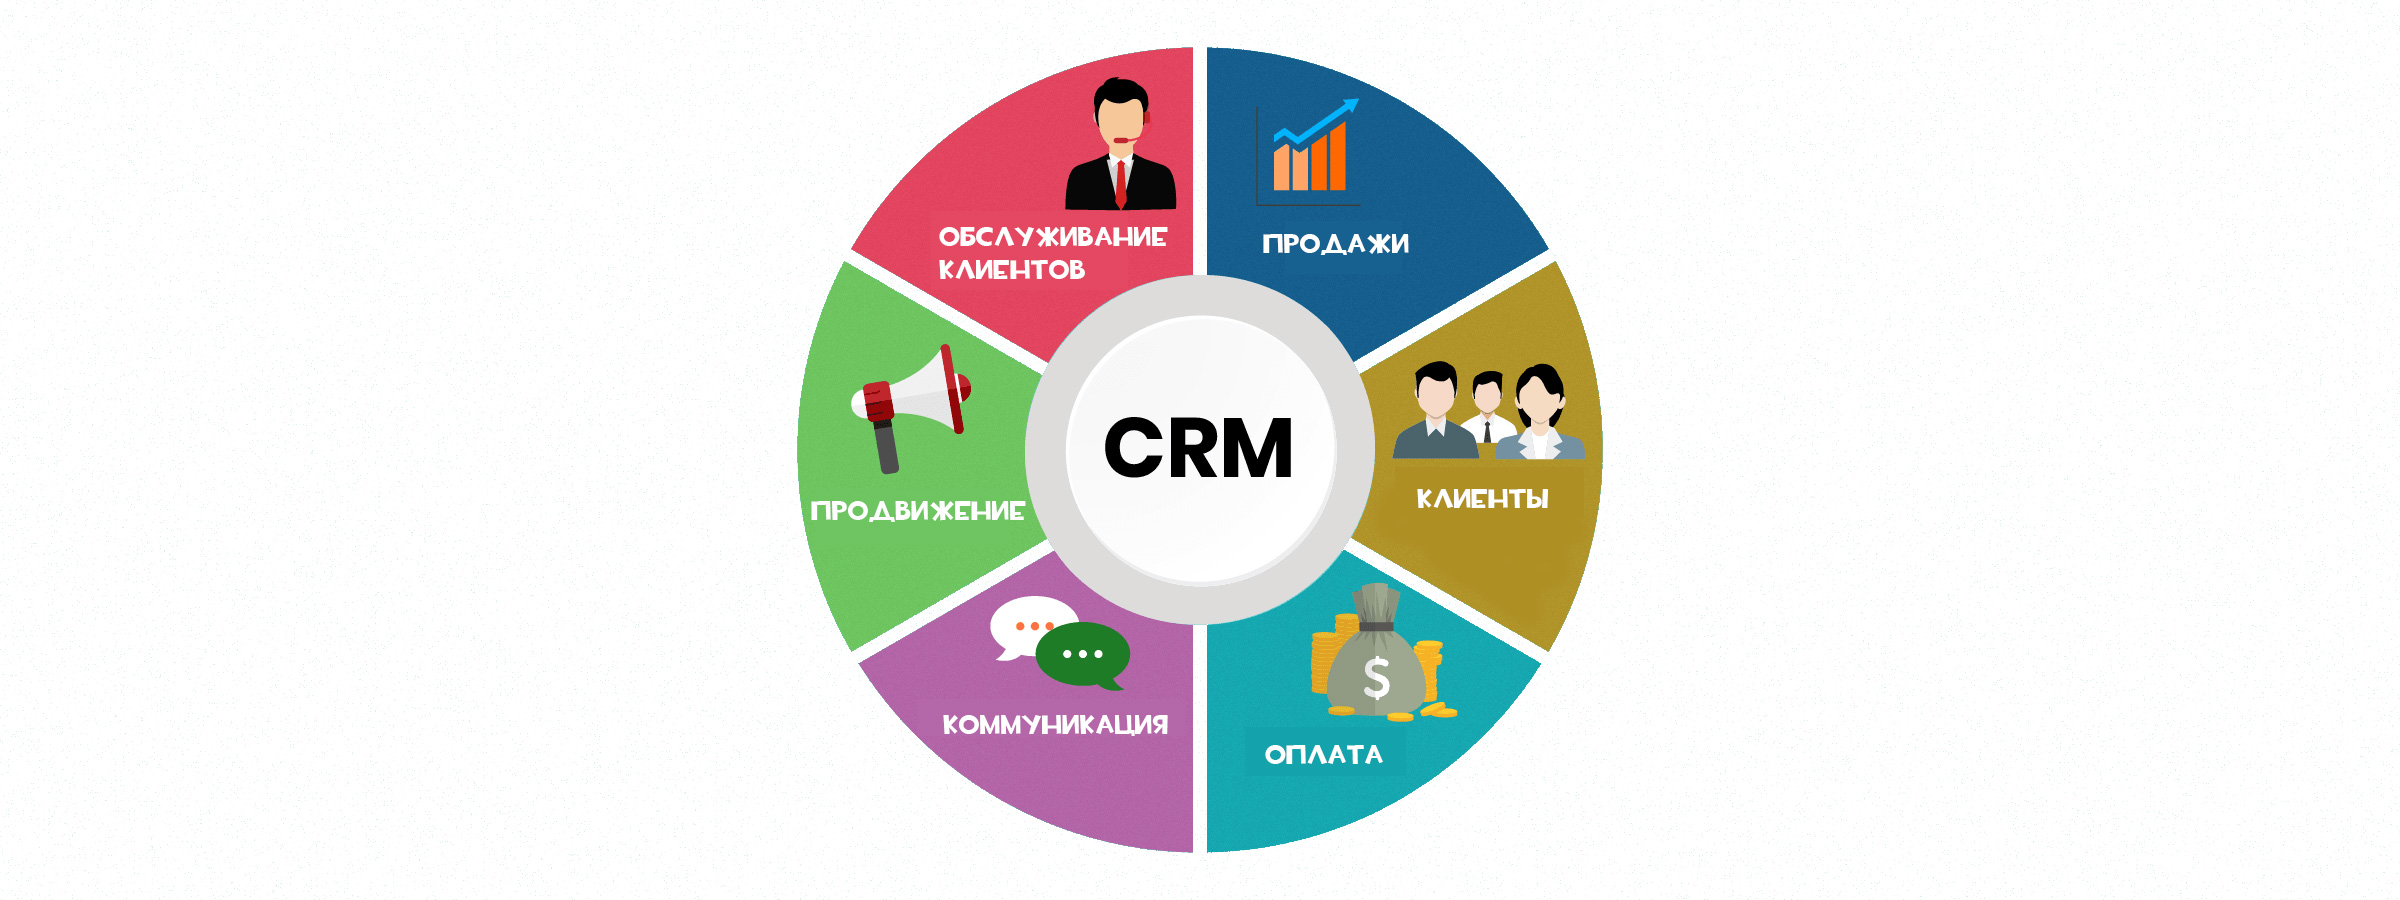 Crm companies. CRM системы управления взаимоотношениями с клиентами. GRM - система управления ЗВАИМООТНОШЕНИЯ С клиентами. CRM системы что это. CRM система схема.